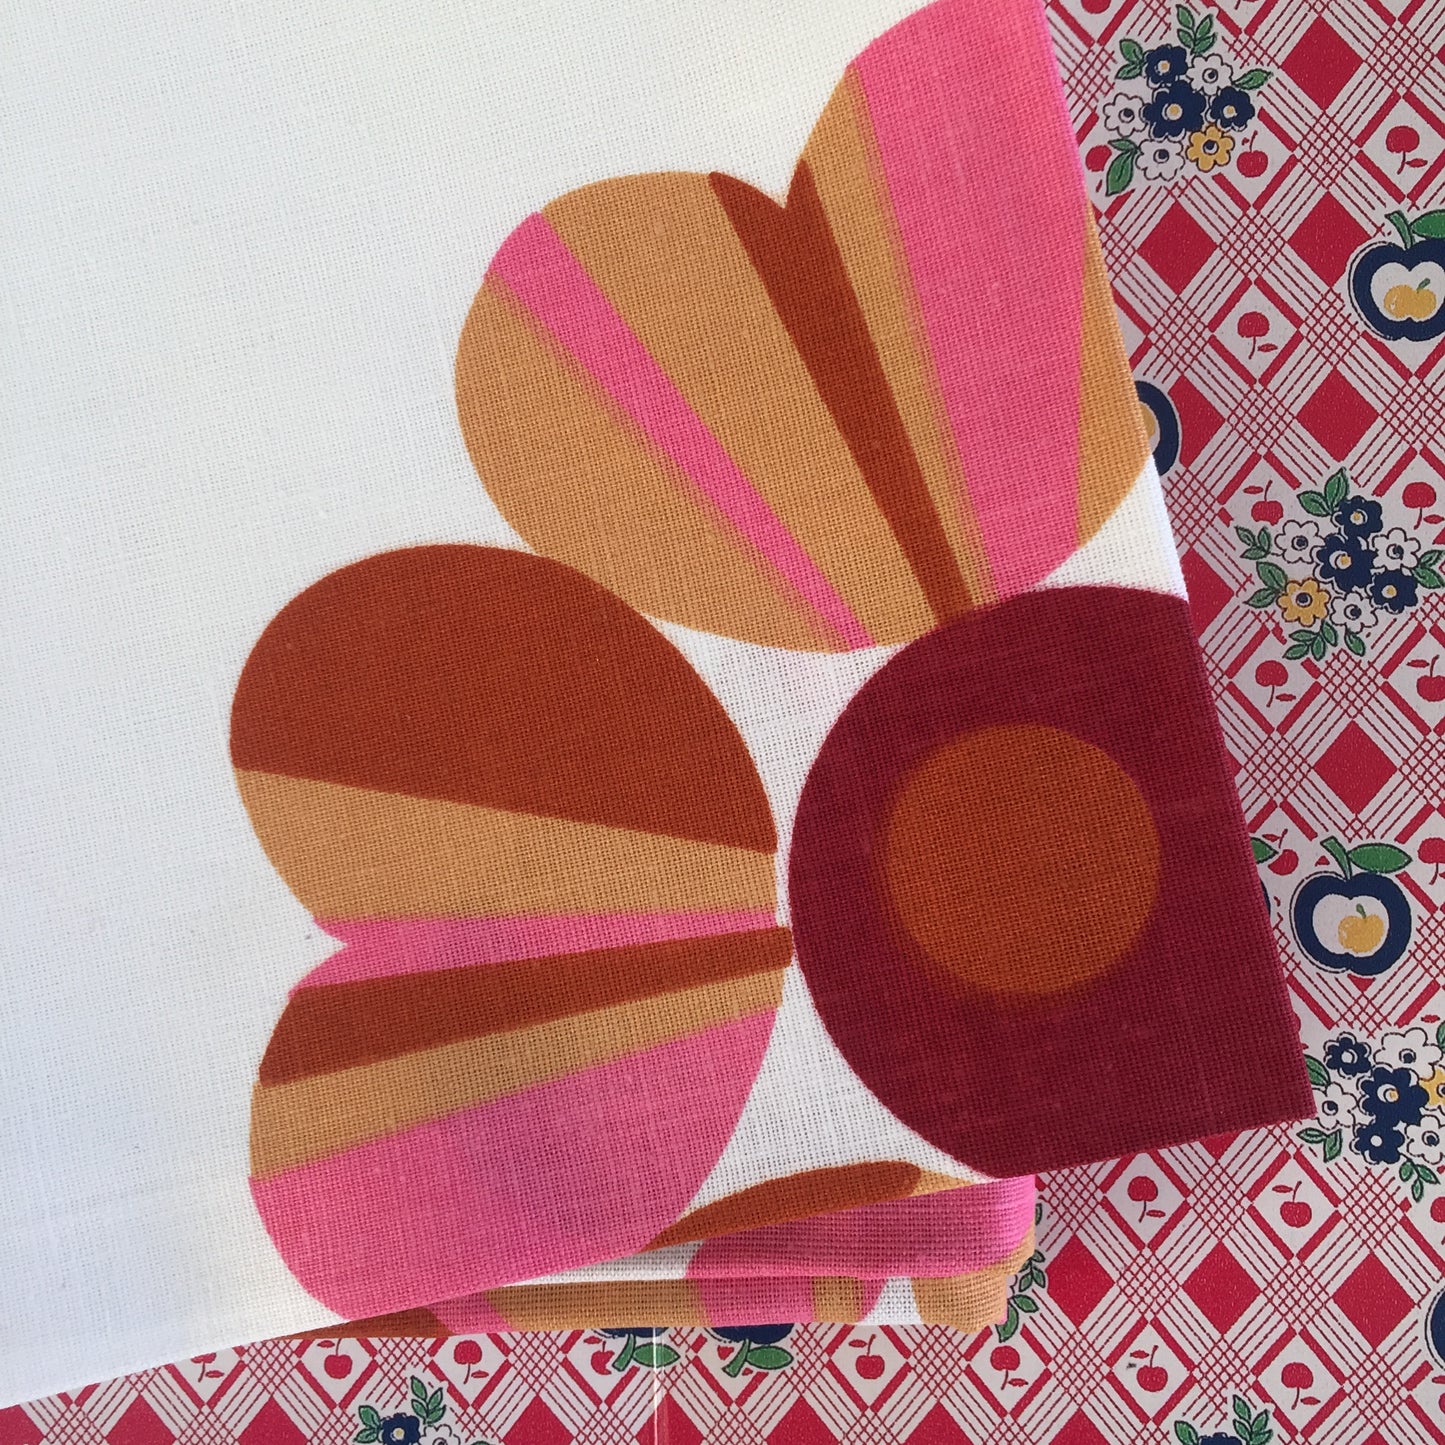 ADORABLE Set of SIX Vintage Cotton Floral 70's RETRO Serviettes Napkins Table